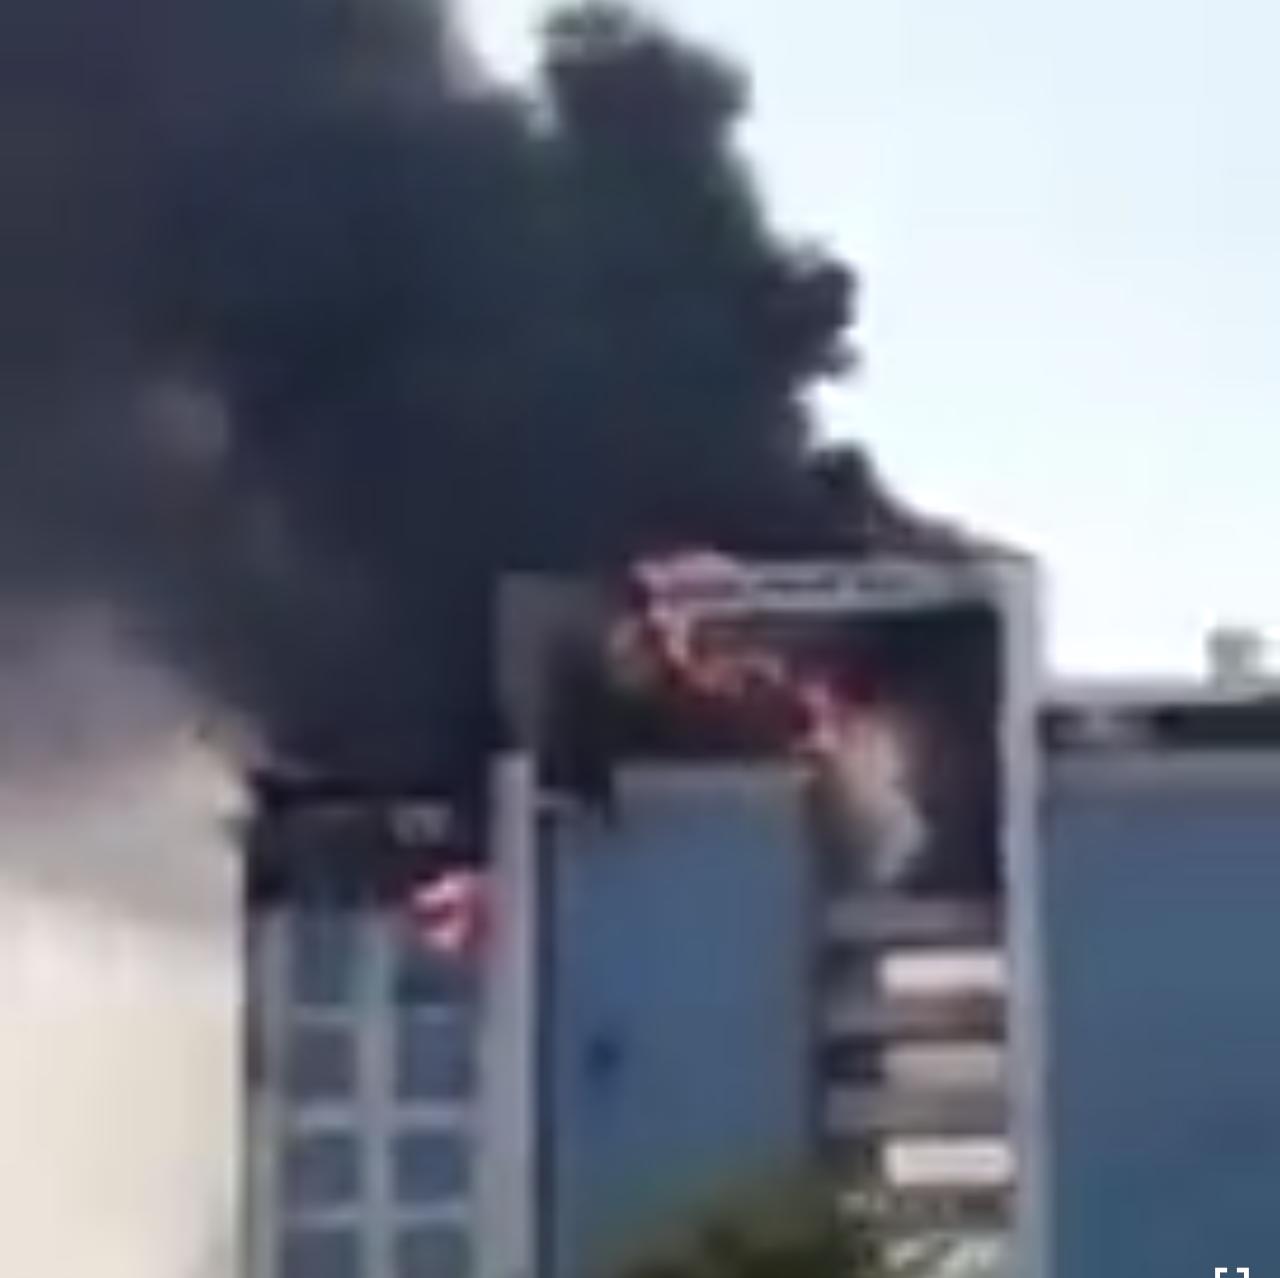 حريق هائل يلتهم مبنى النيابة العامة في الدمام بالسعودية... فيديو